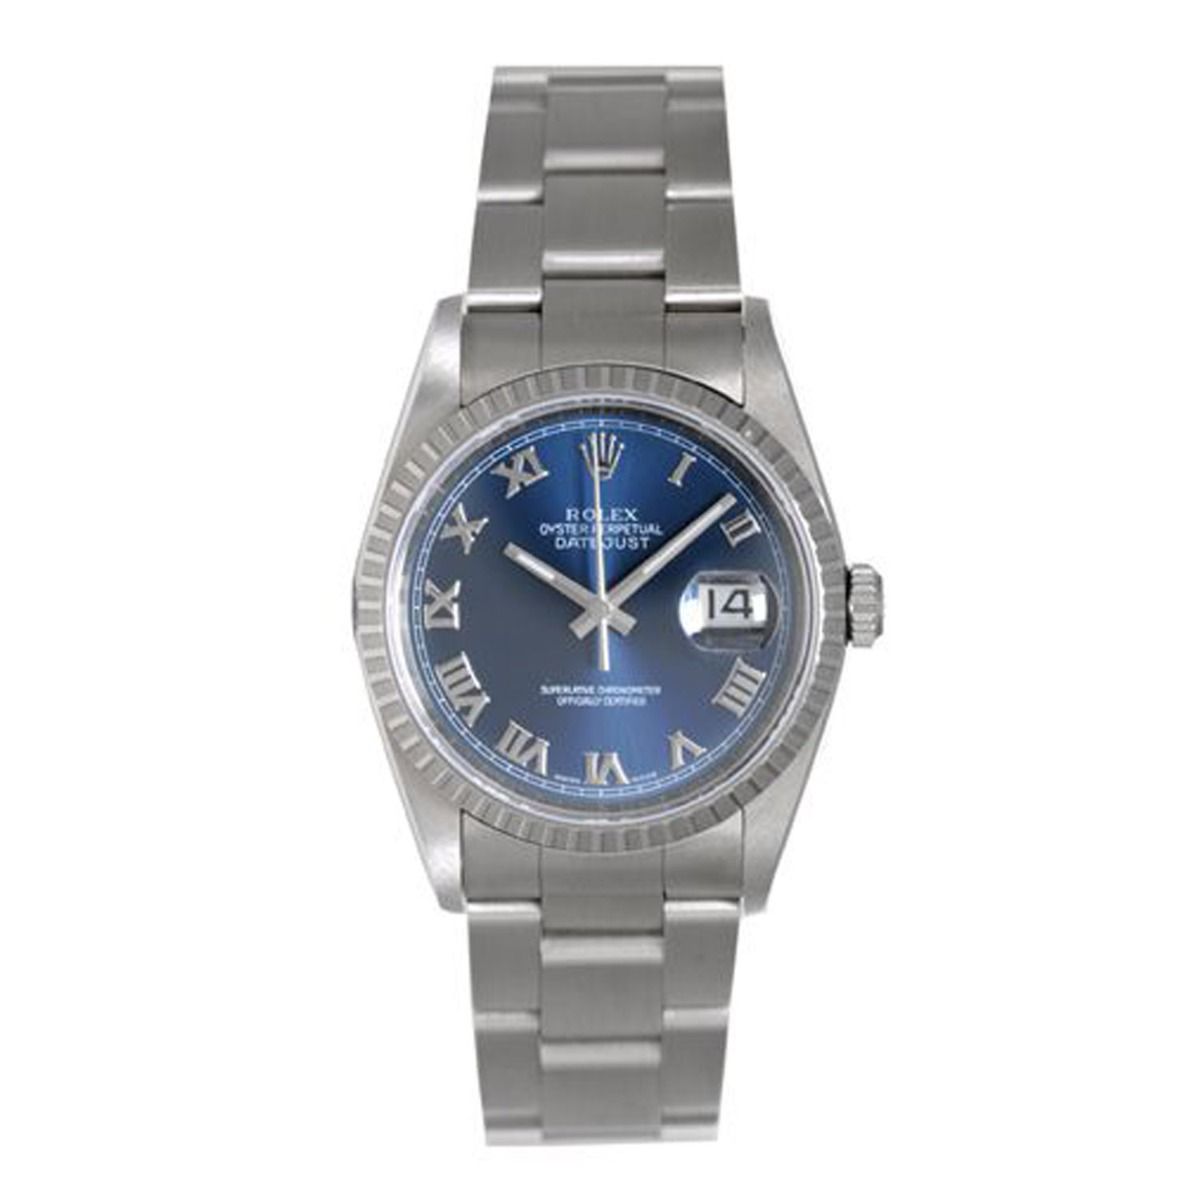 smog ujævnheder renhed Men's Rolex Datejust Watch 16220 Stainless Steel Blue Dial